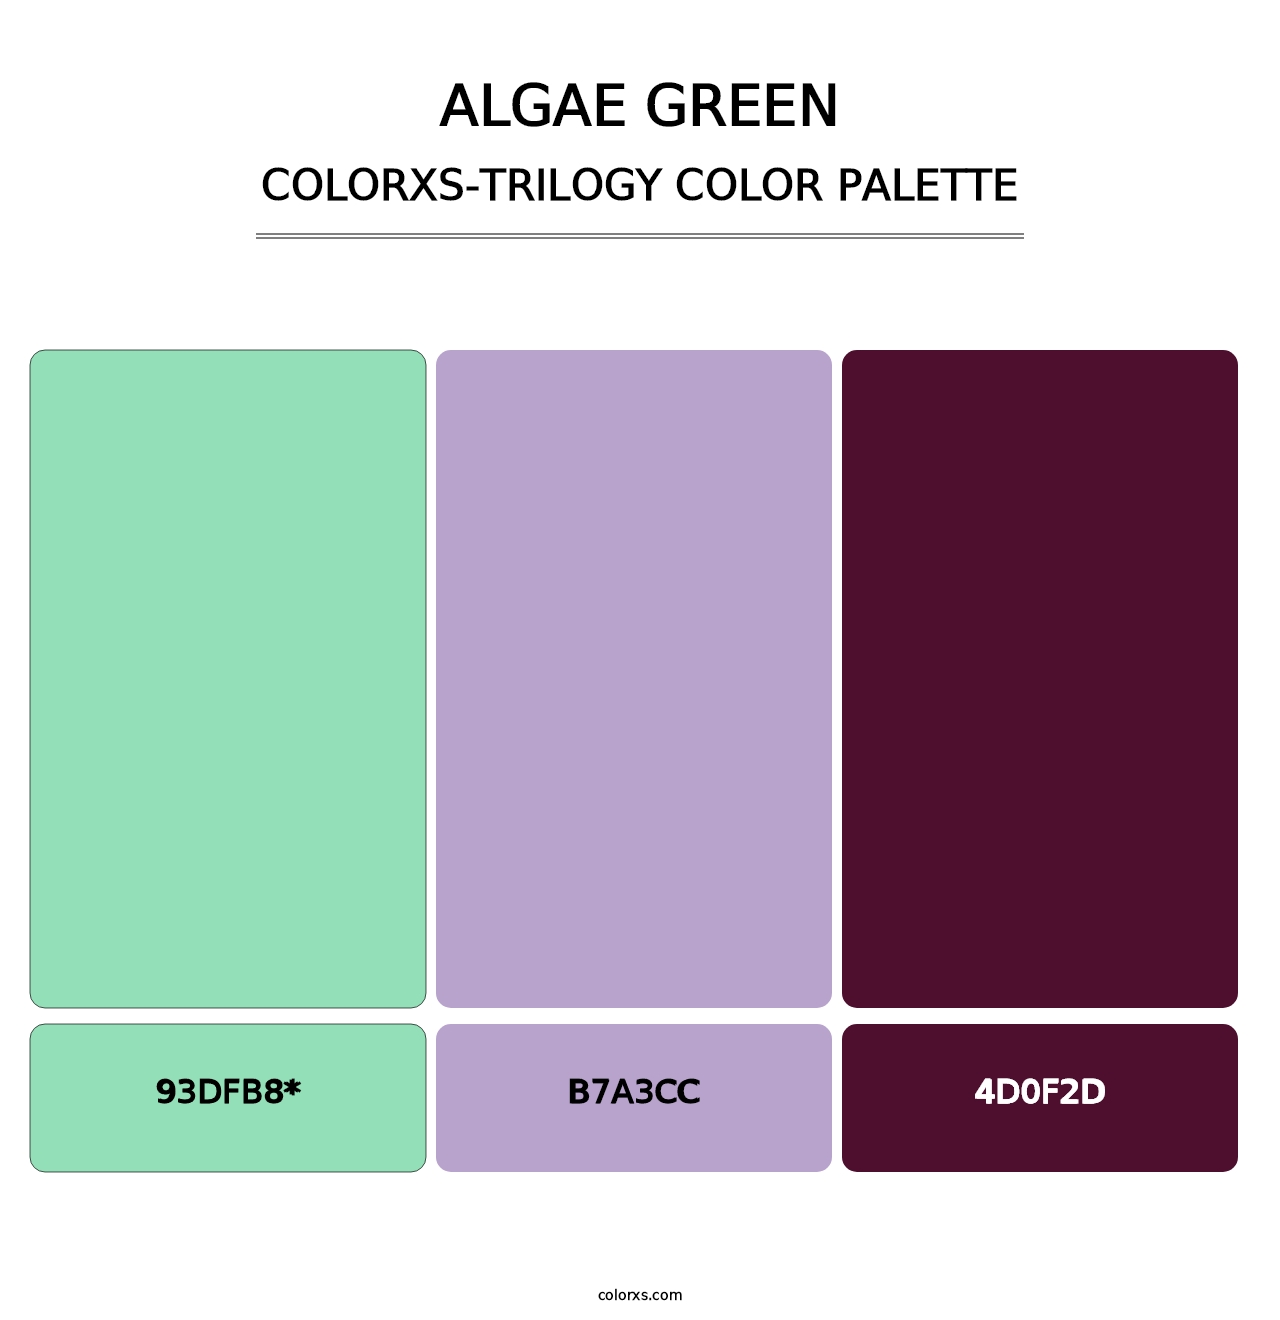 Algae Green - Colorxs Trilogy Palette